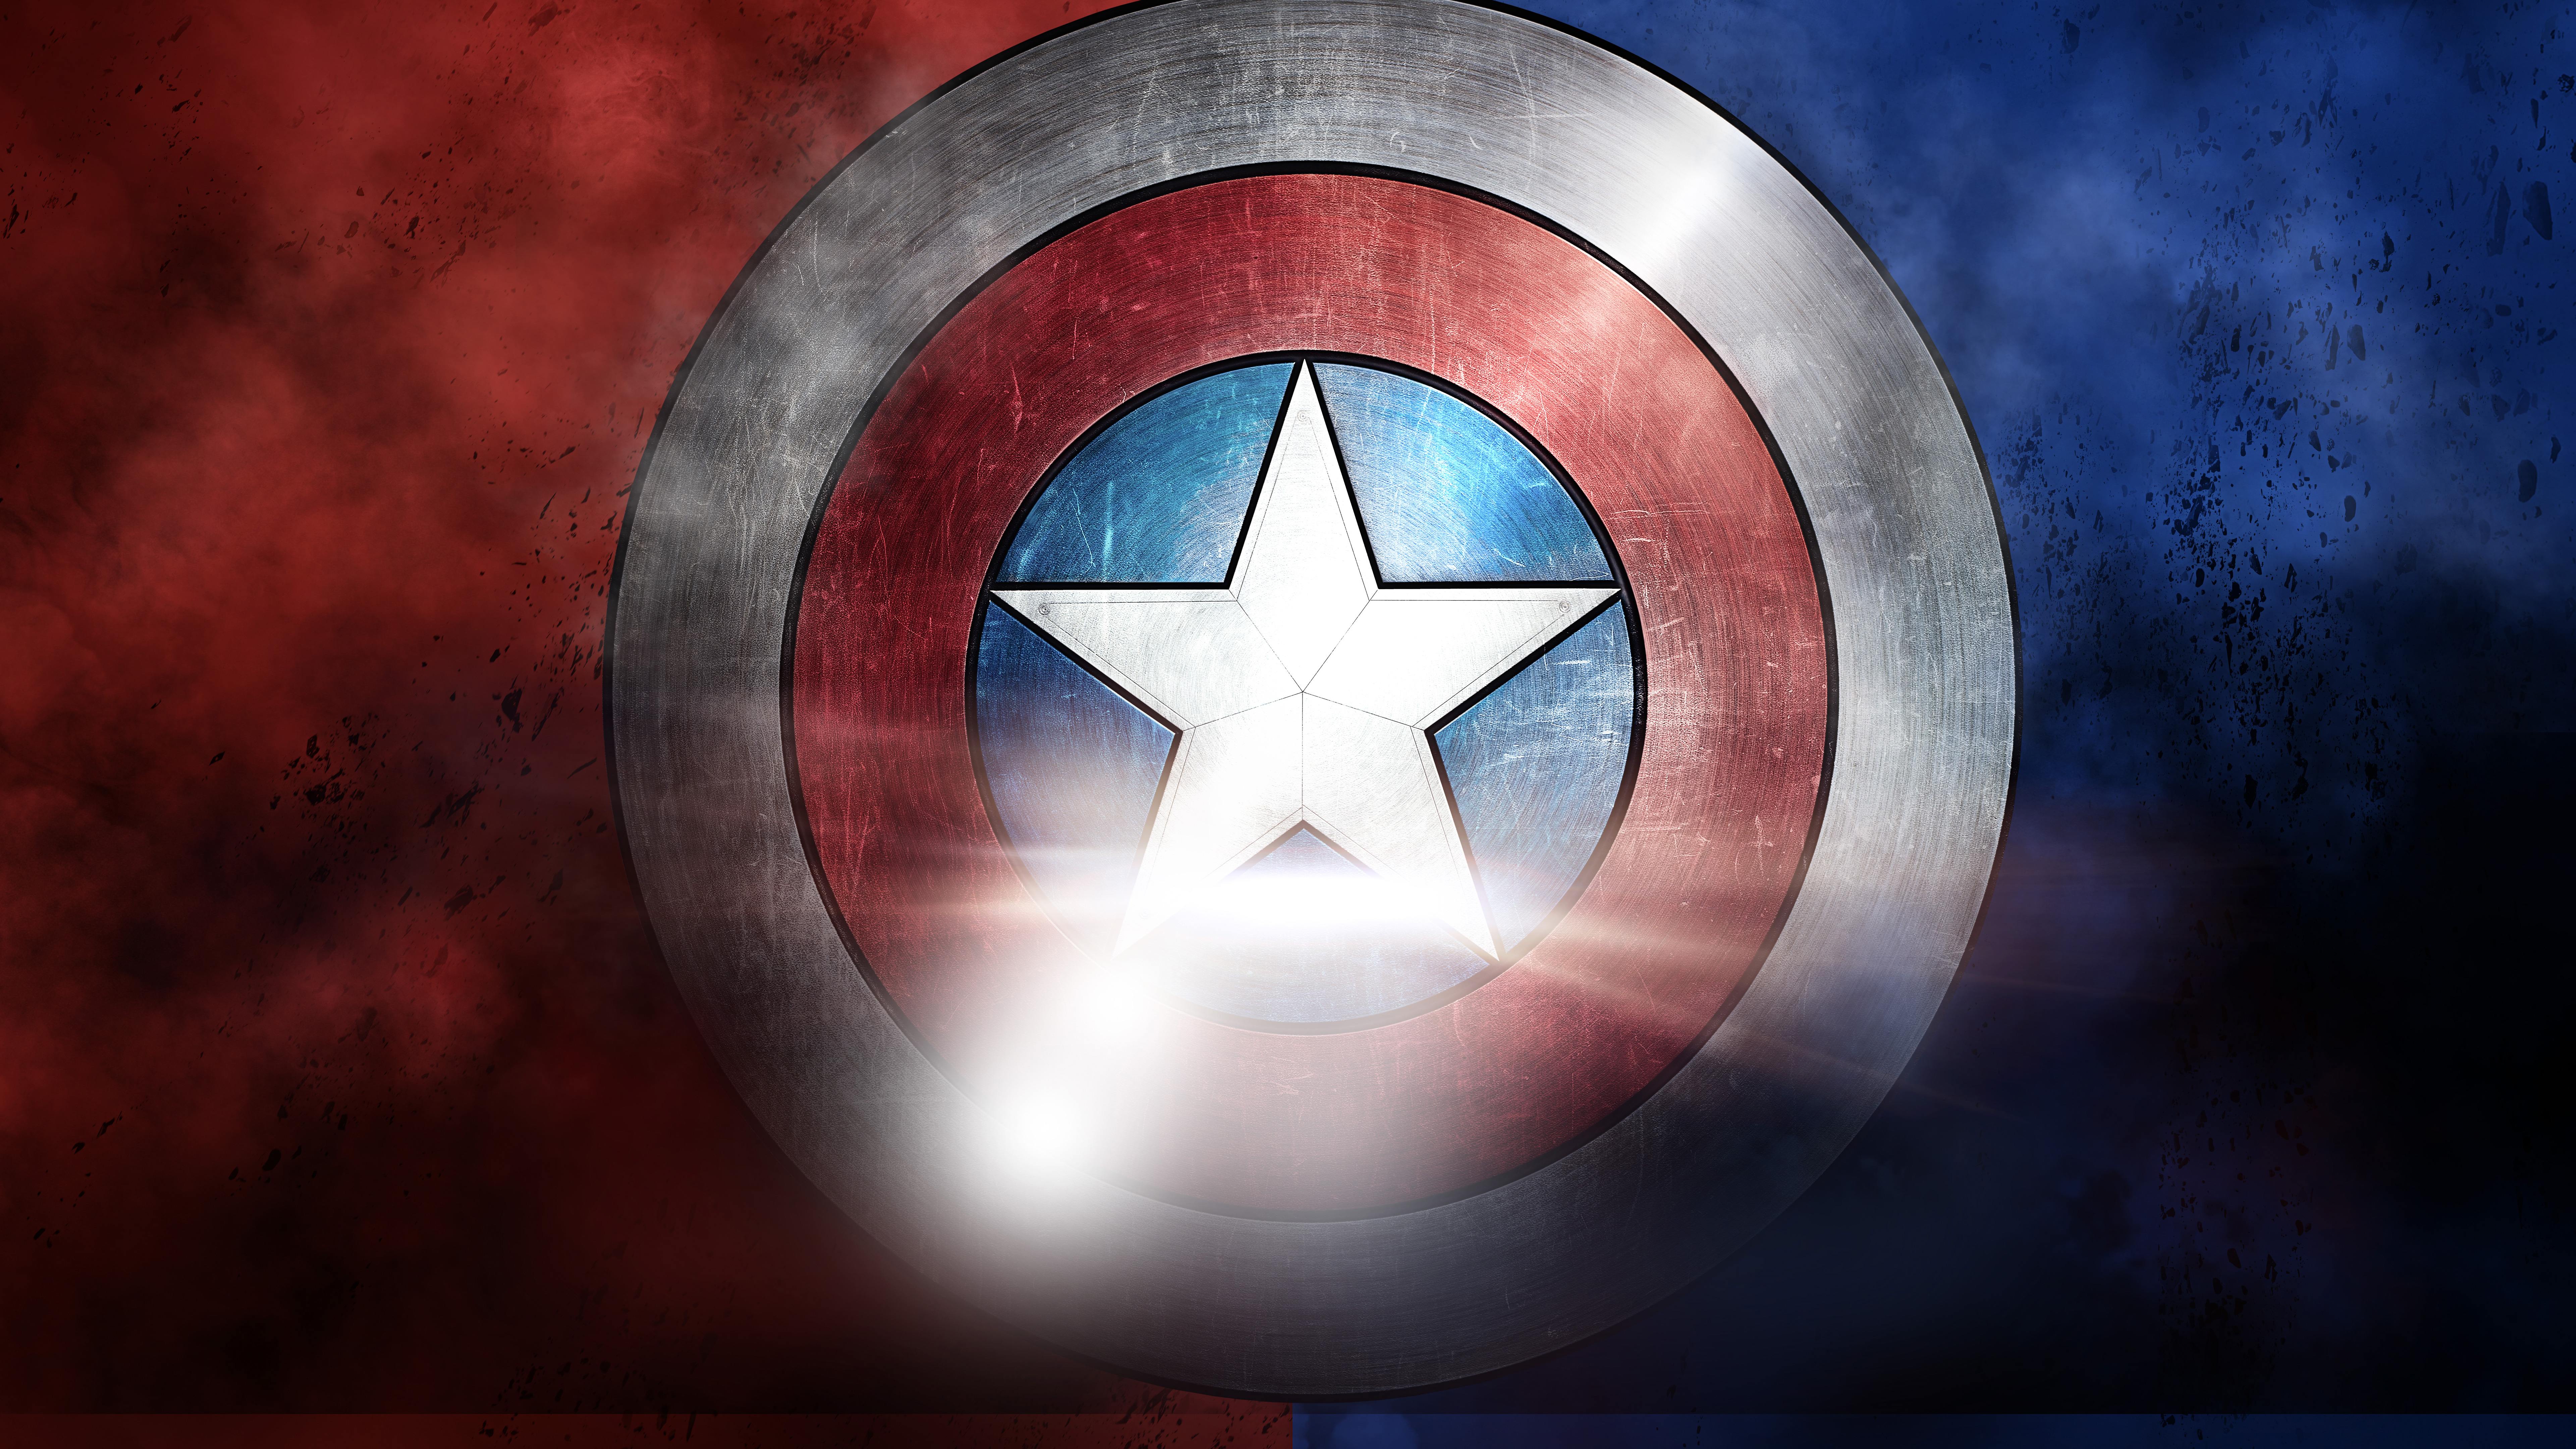 título de fondo de pantalla,capitan america,personaje de ficción,superhéroe,símbolo,bandera